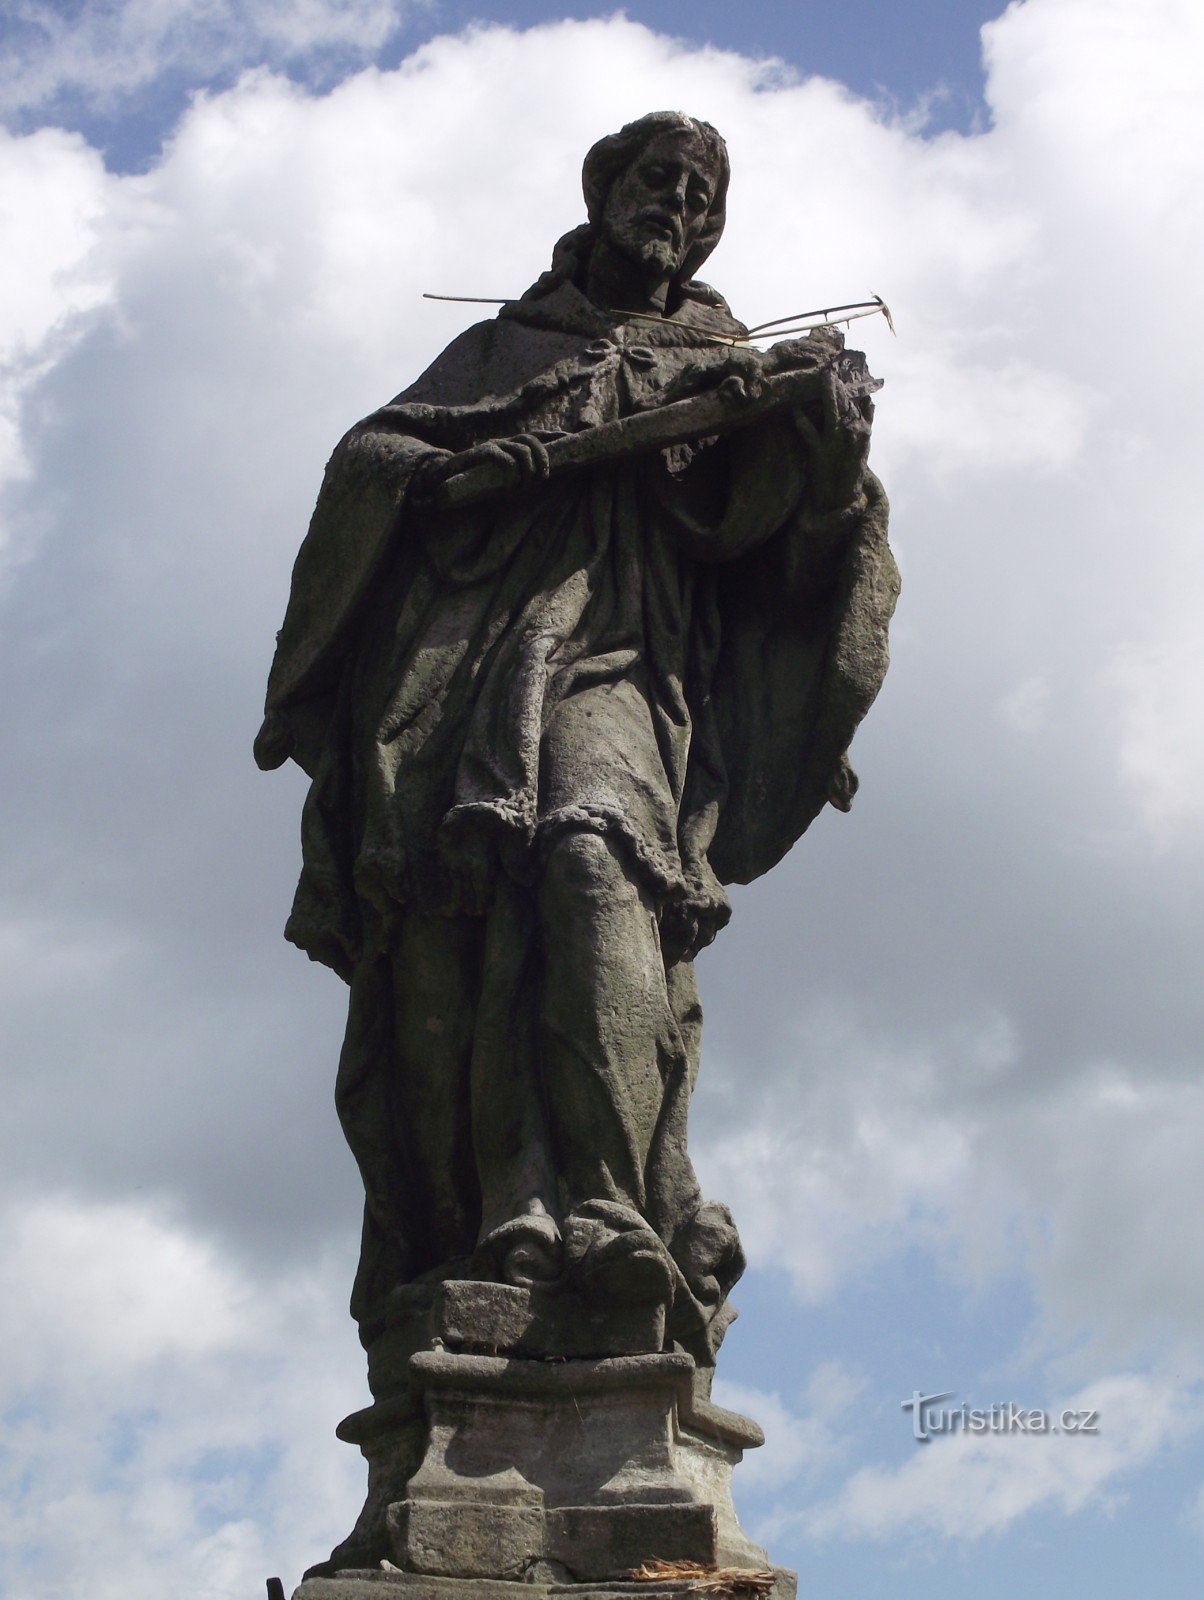 Vojnův Městec - statue of St. Jan Nepomucký